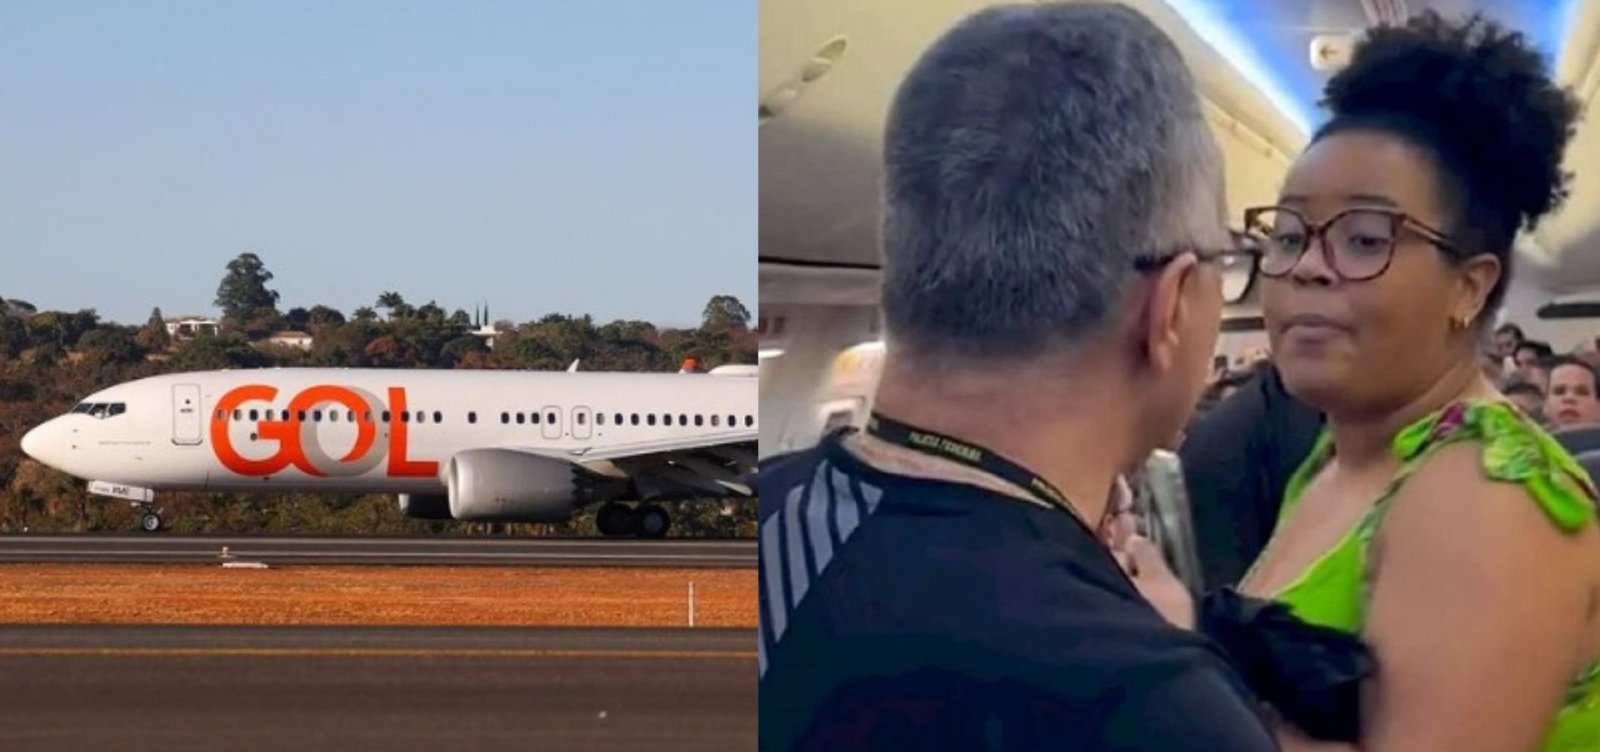 Novo vídeo mostra desespero da mãe de passageira expulsa de voo da Gol: “Estou temendo pela segurança dela”